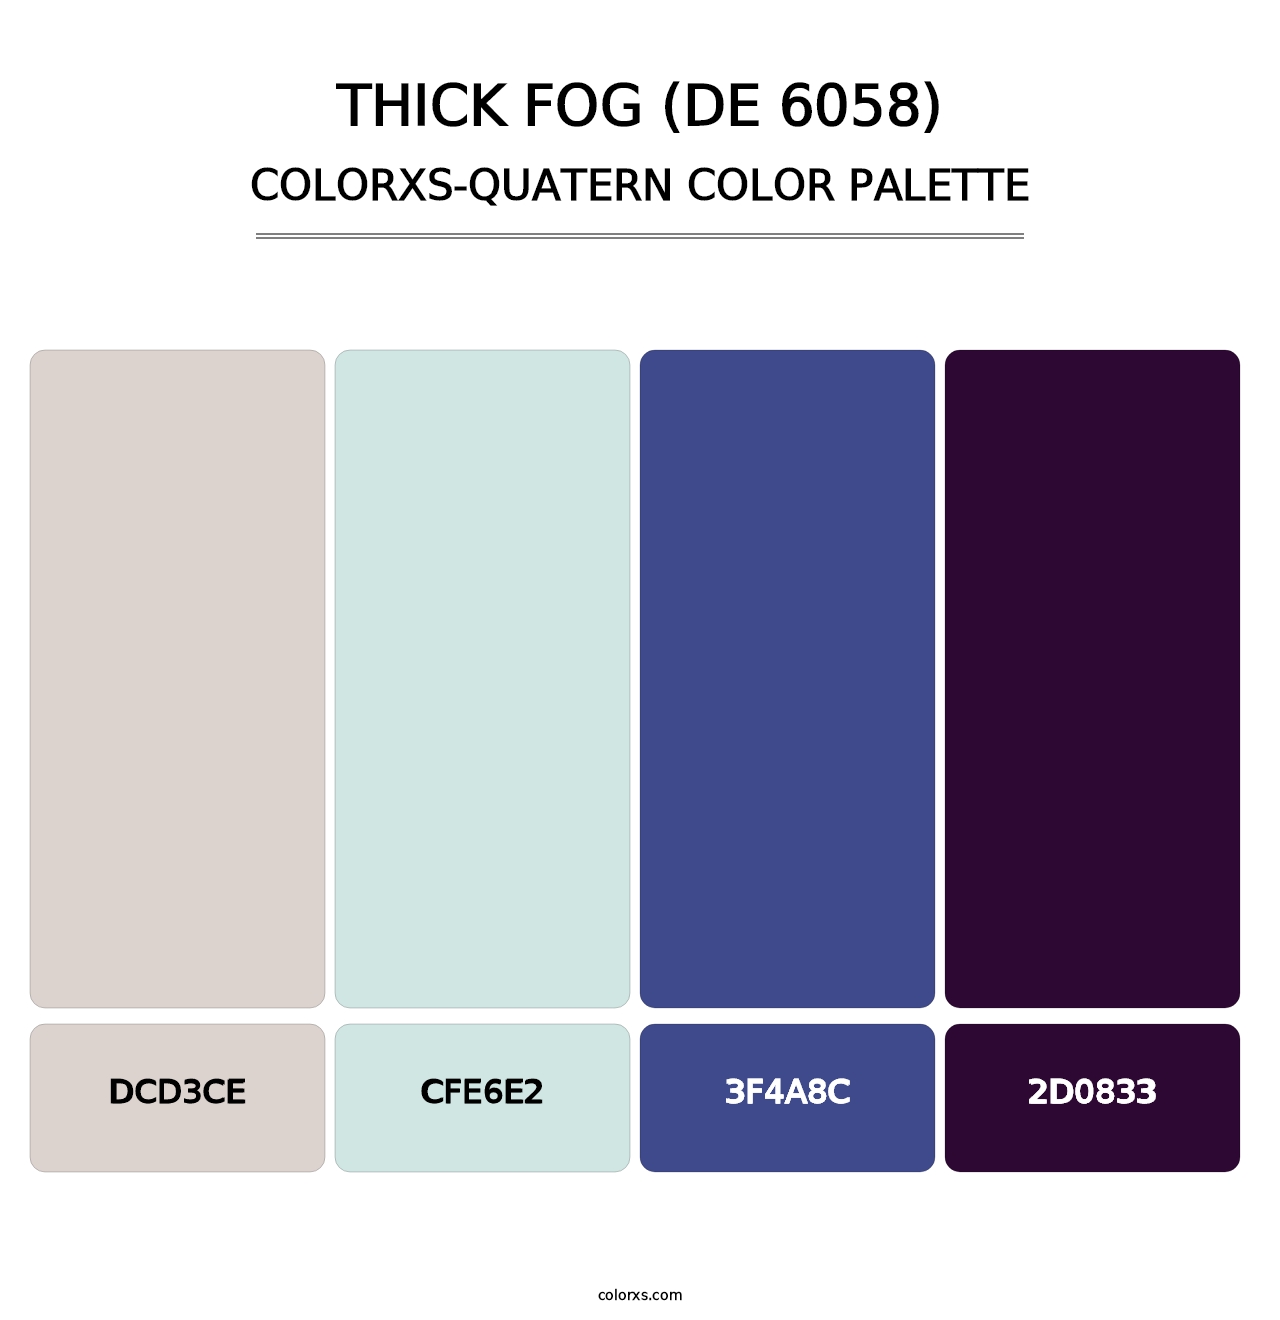 Thick Fog (DE 6058) - Colorxs Quatern Palette